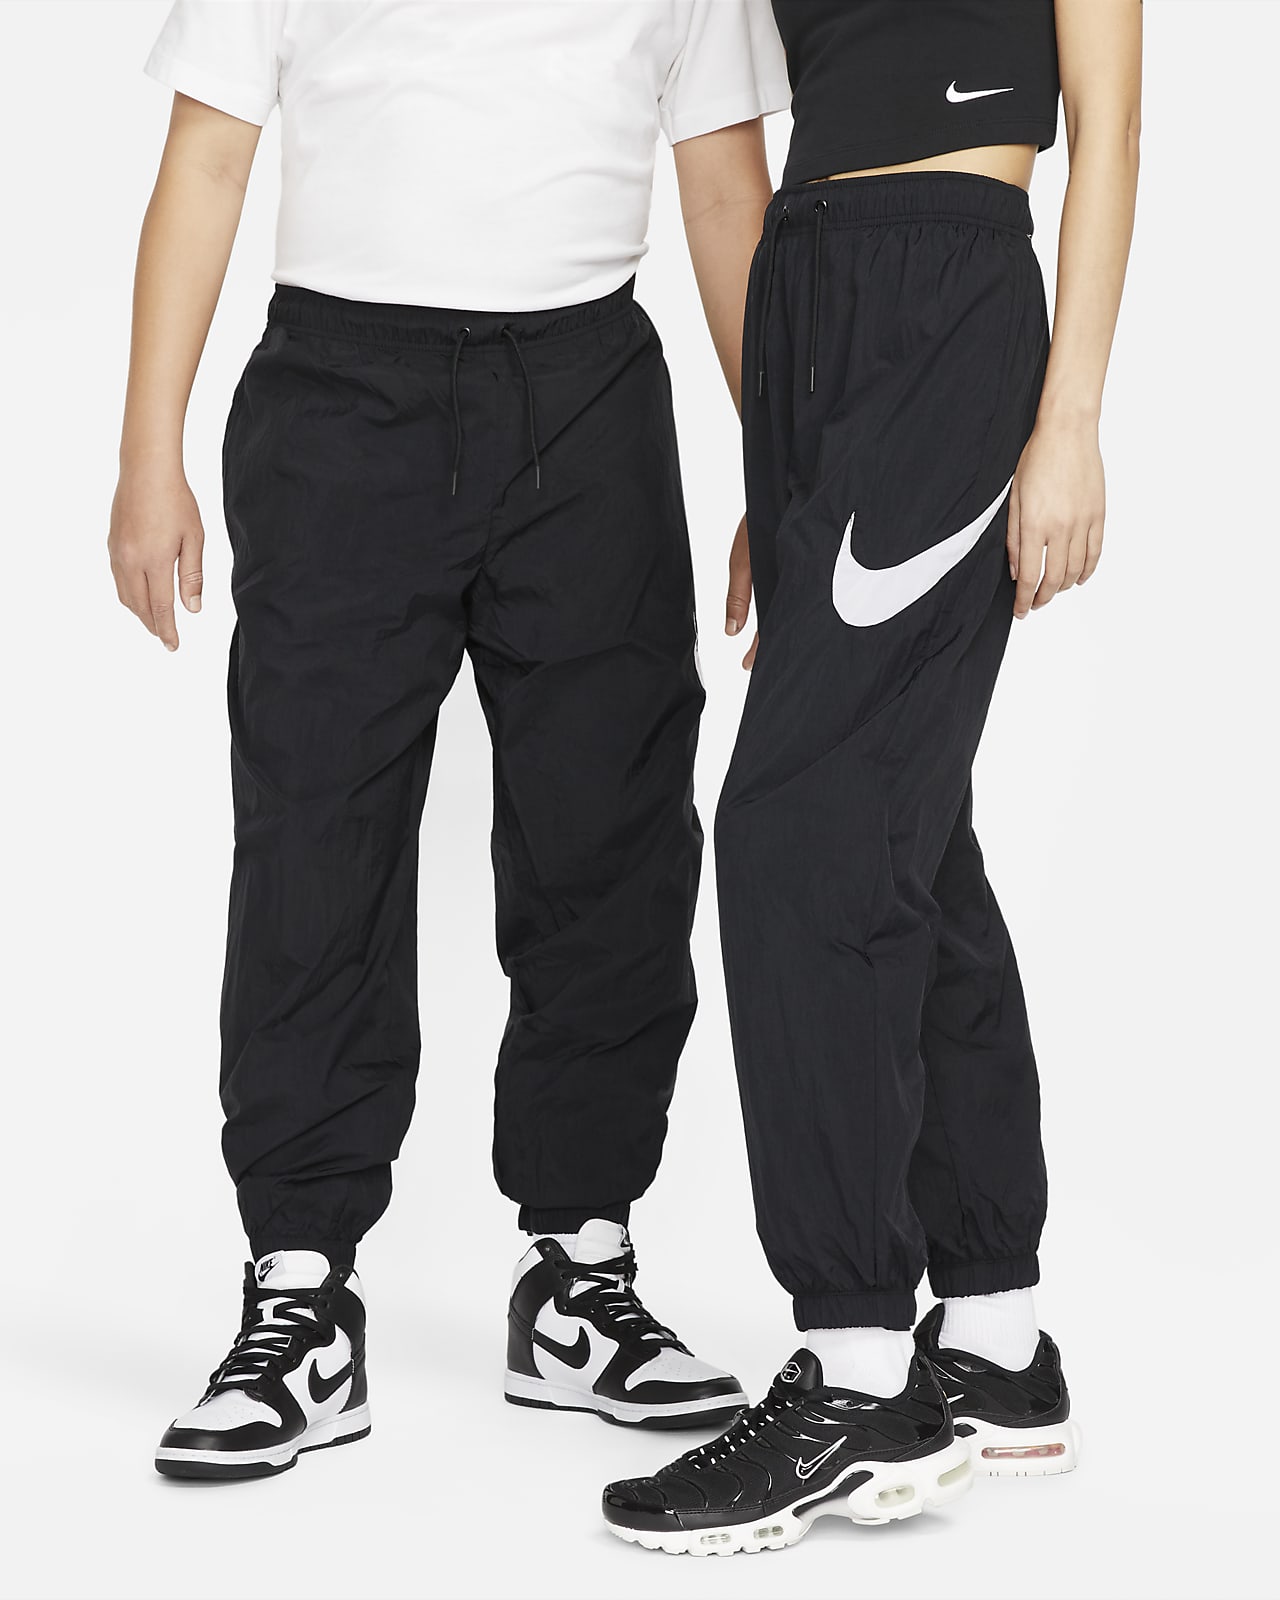 Nike W Nsw Phnx Flc Hr Os Pant Μαυρο - Γυναικεία Παντελόνια - Shopistas